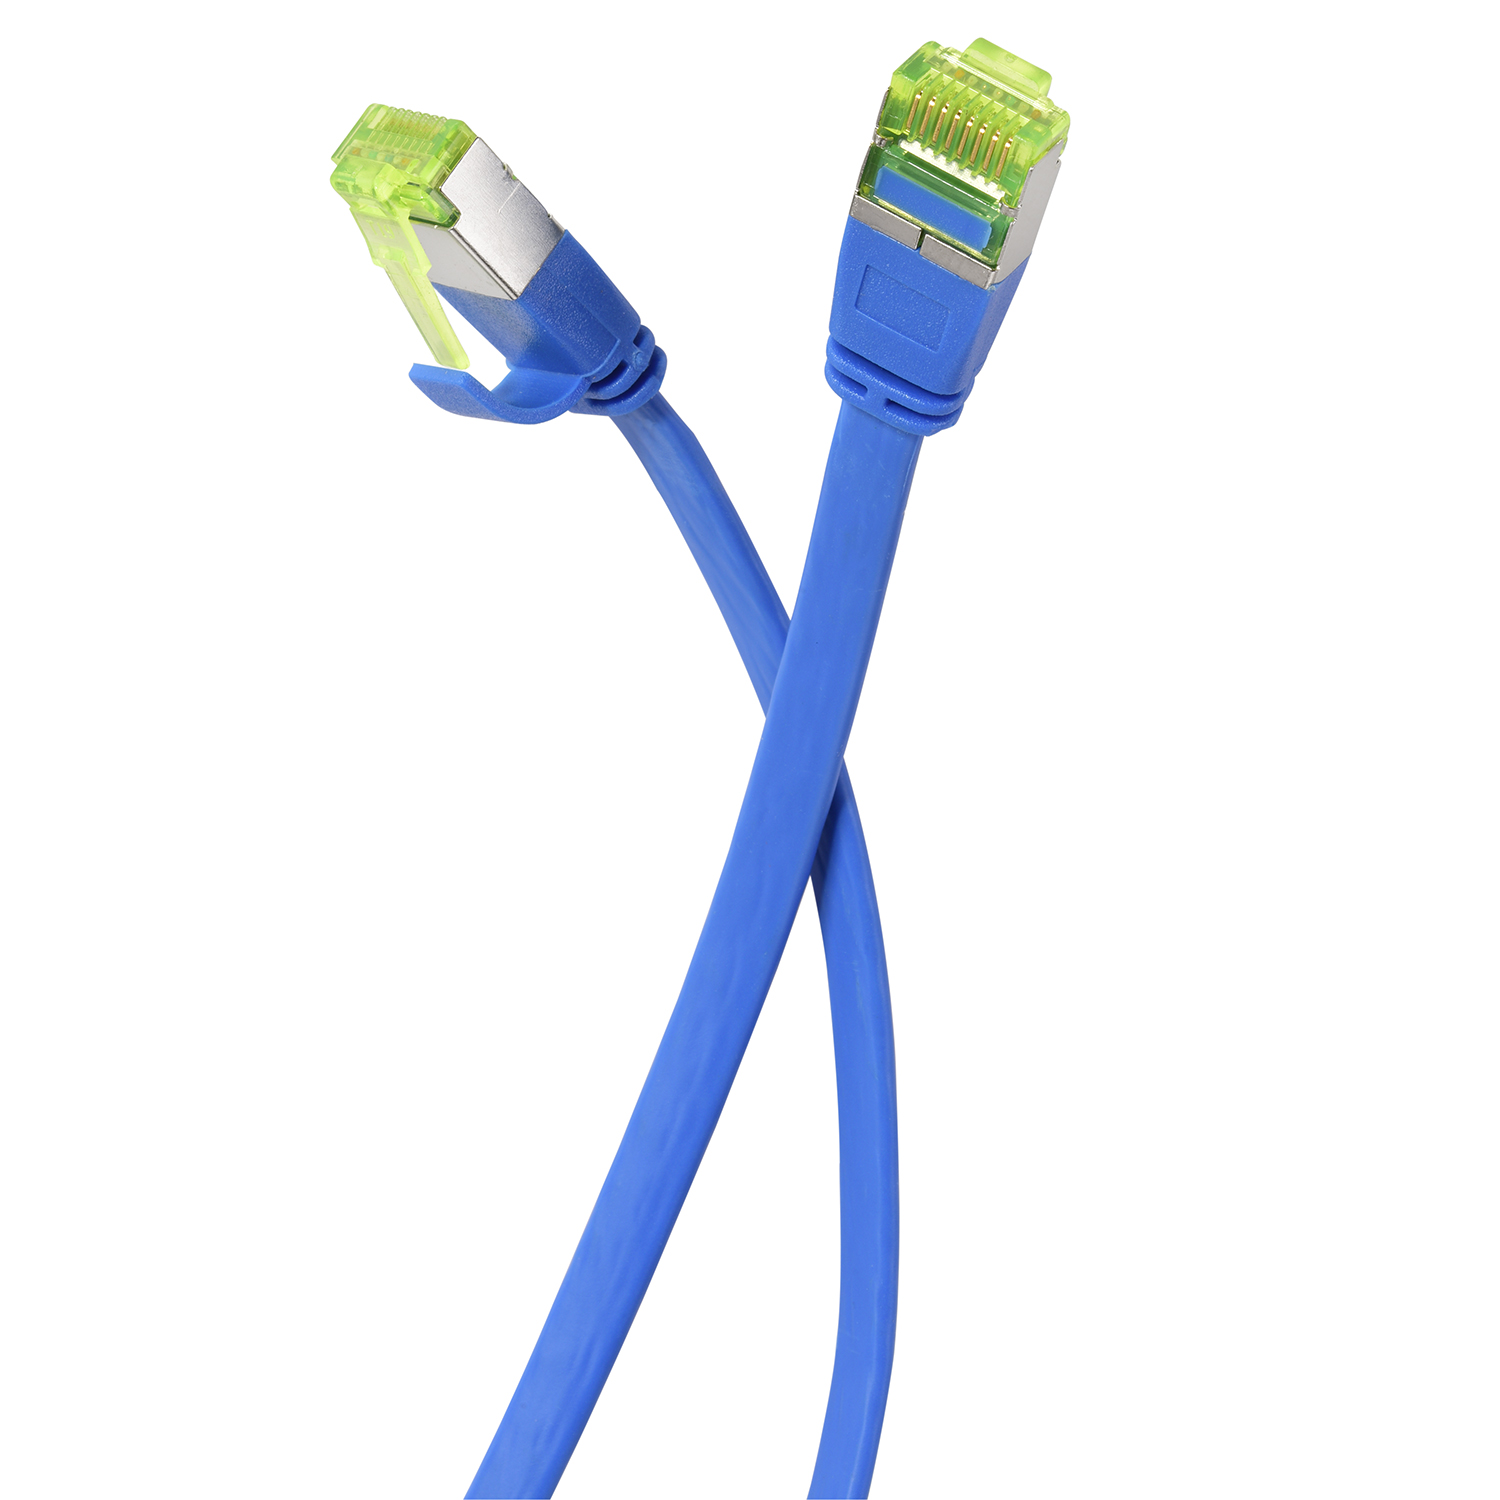 blau, GBit, U/FTP TPFNET / 50m Netzwerkkabel, 10 Patchkabel Flachkabel m 50